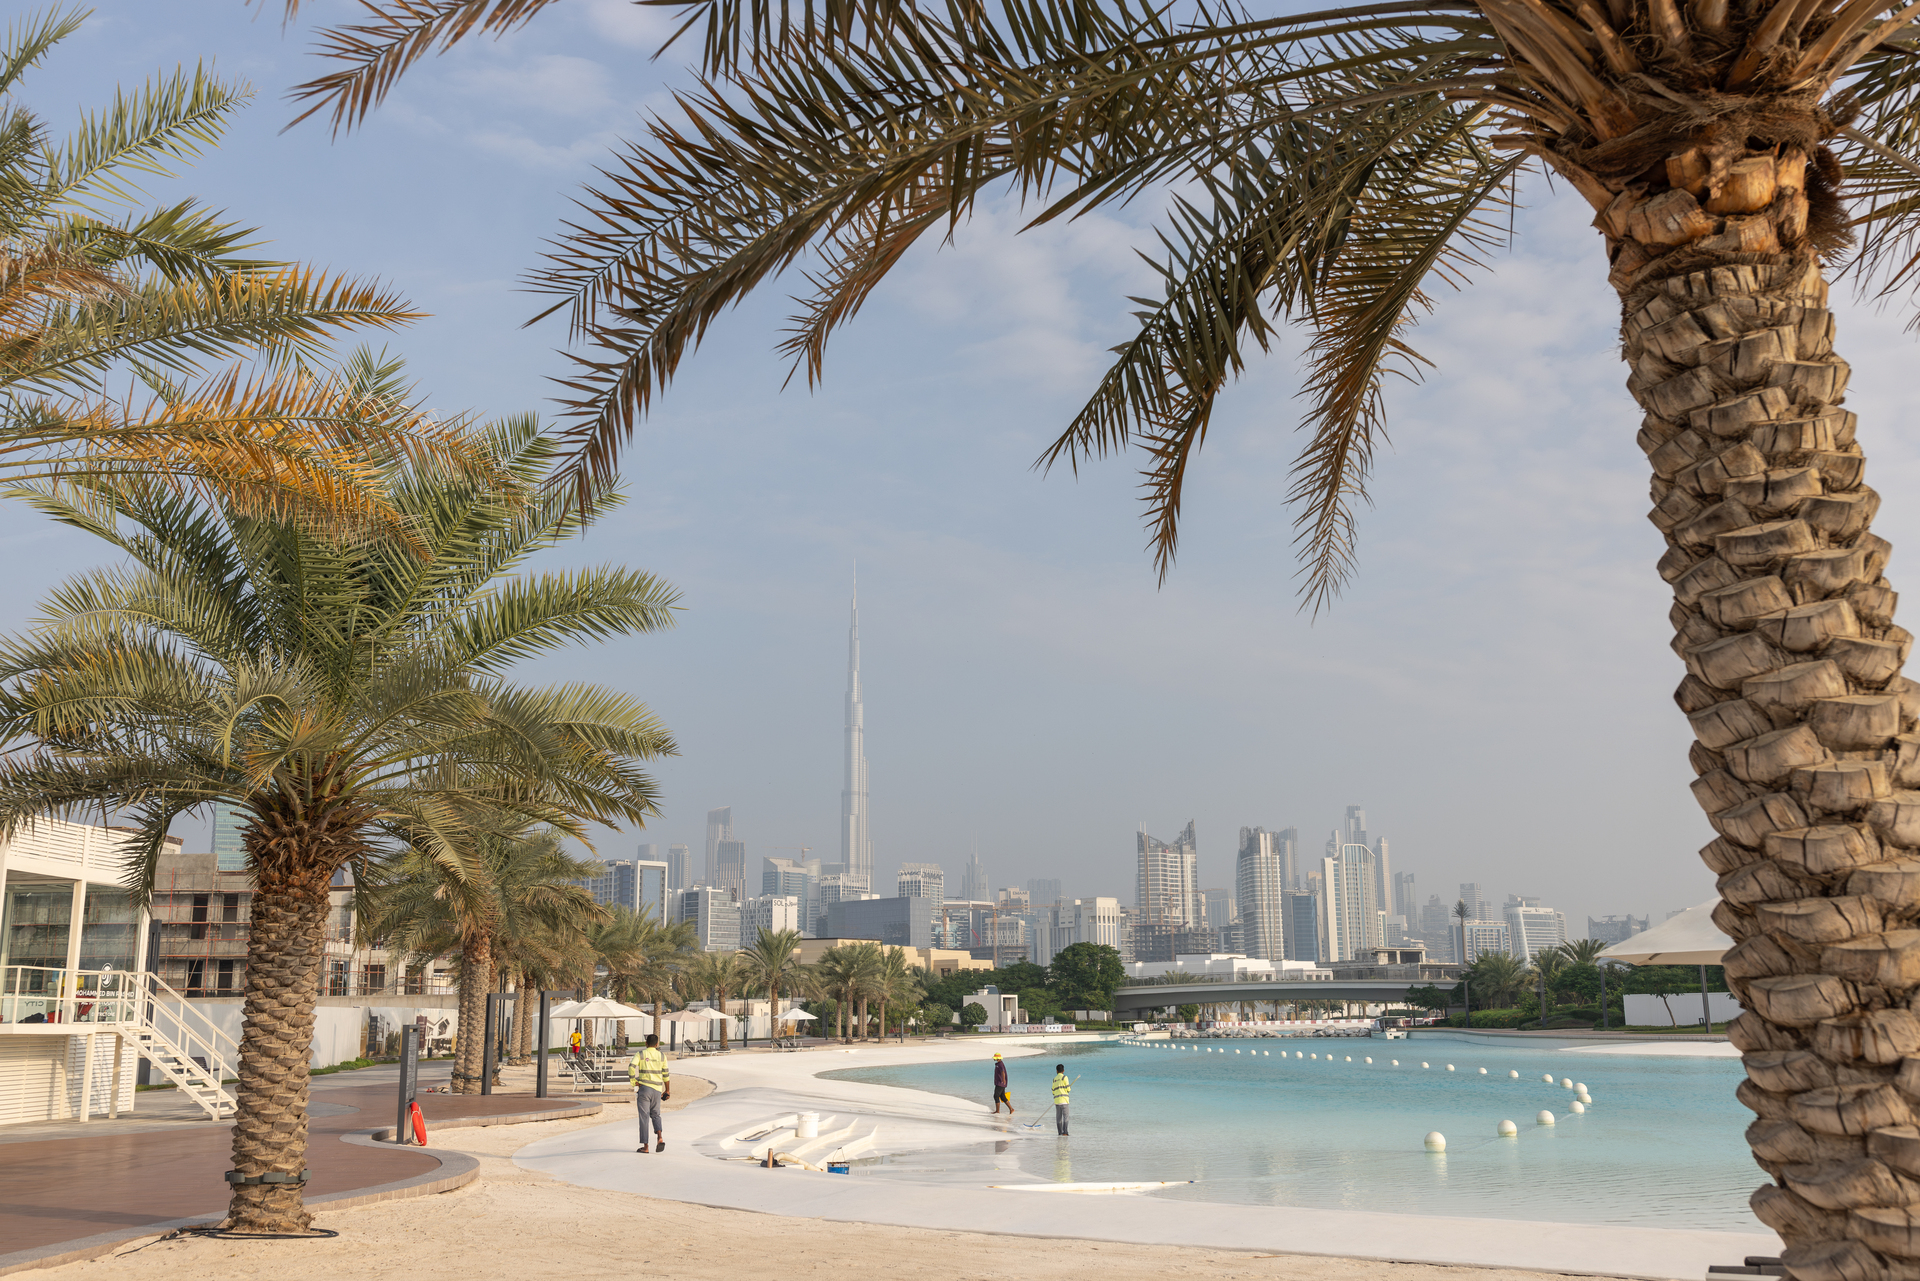 «За глоток воды могли оштрафовать на 200 долларов». Как проходит Рамадан в Дубае и как он сказывается на туристах4